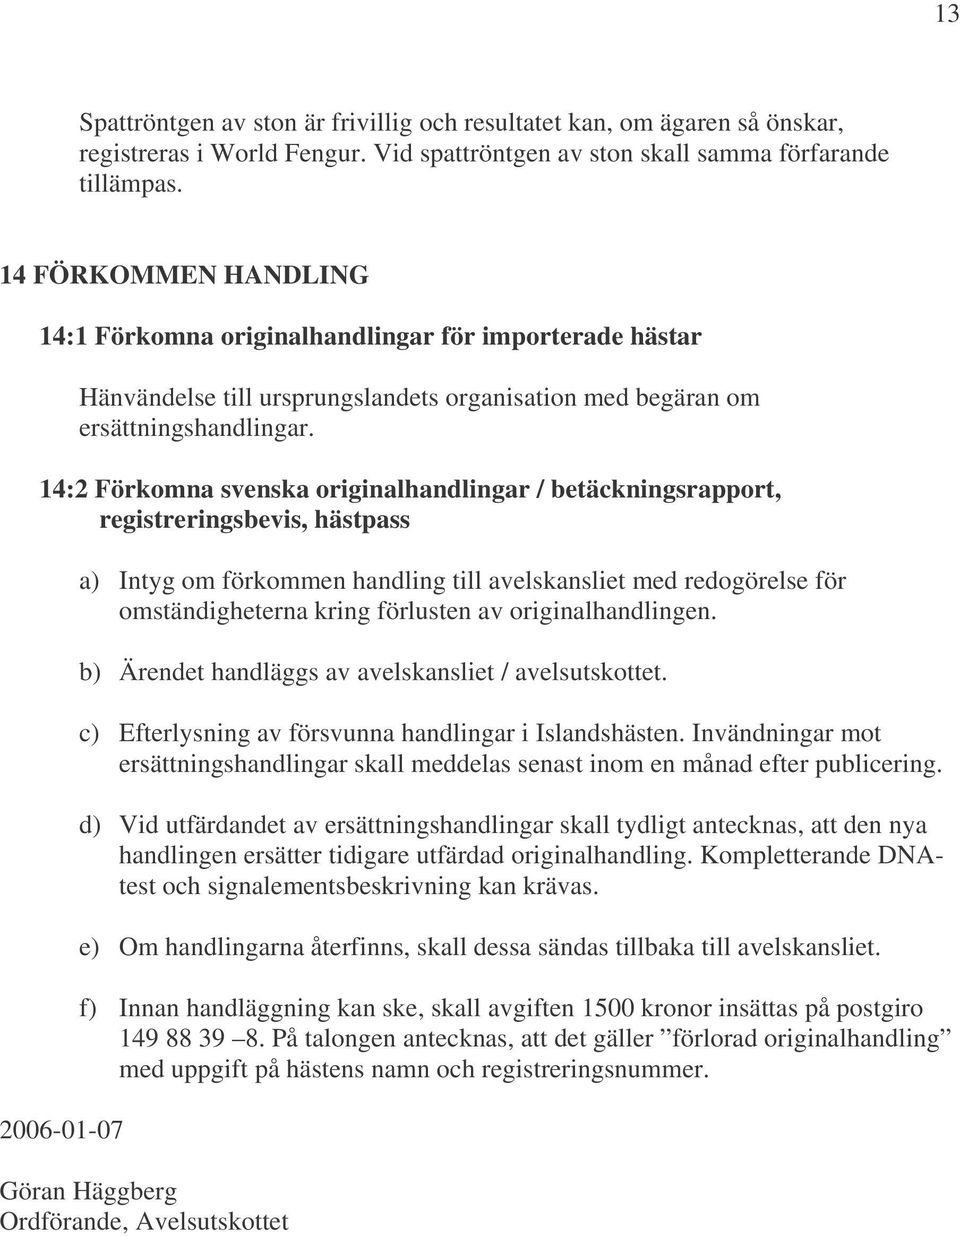 14:2 Förkomna svenska originalhandlingar / betäckningsrapport, registreringsbevis, hästpass 2006-01-07 a) Intyg om förkommen handling till avelskansliet med redogörelse för omständigheterna kring